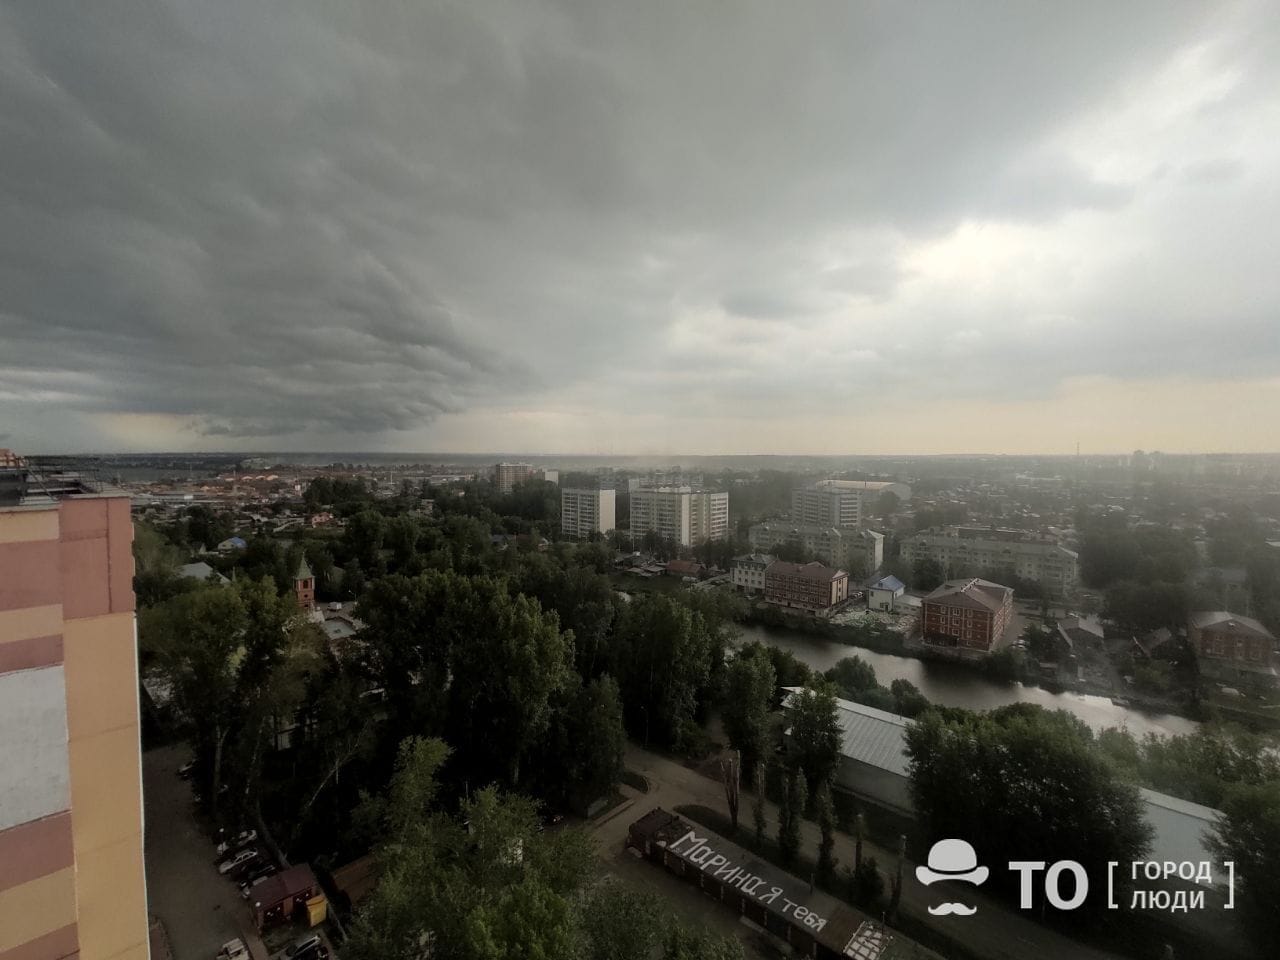 Город, Погода и природа, дождь природа красота вид сверху томск сверху Томск во время грозы глазами промышленного альпиниста